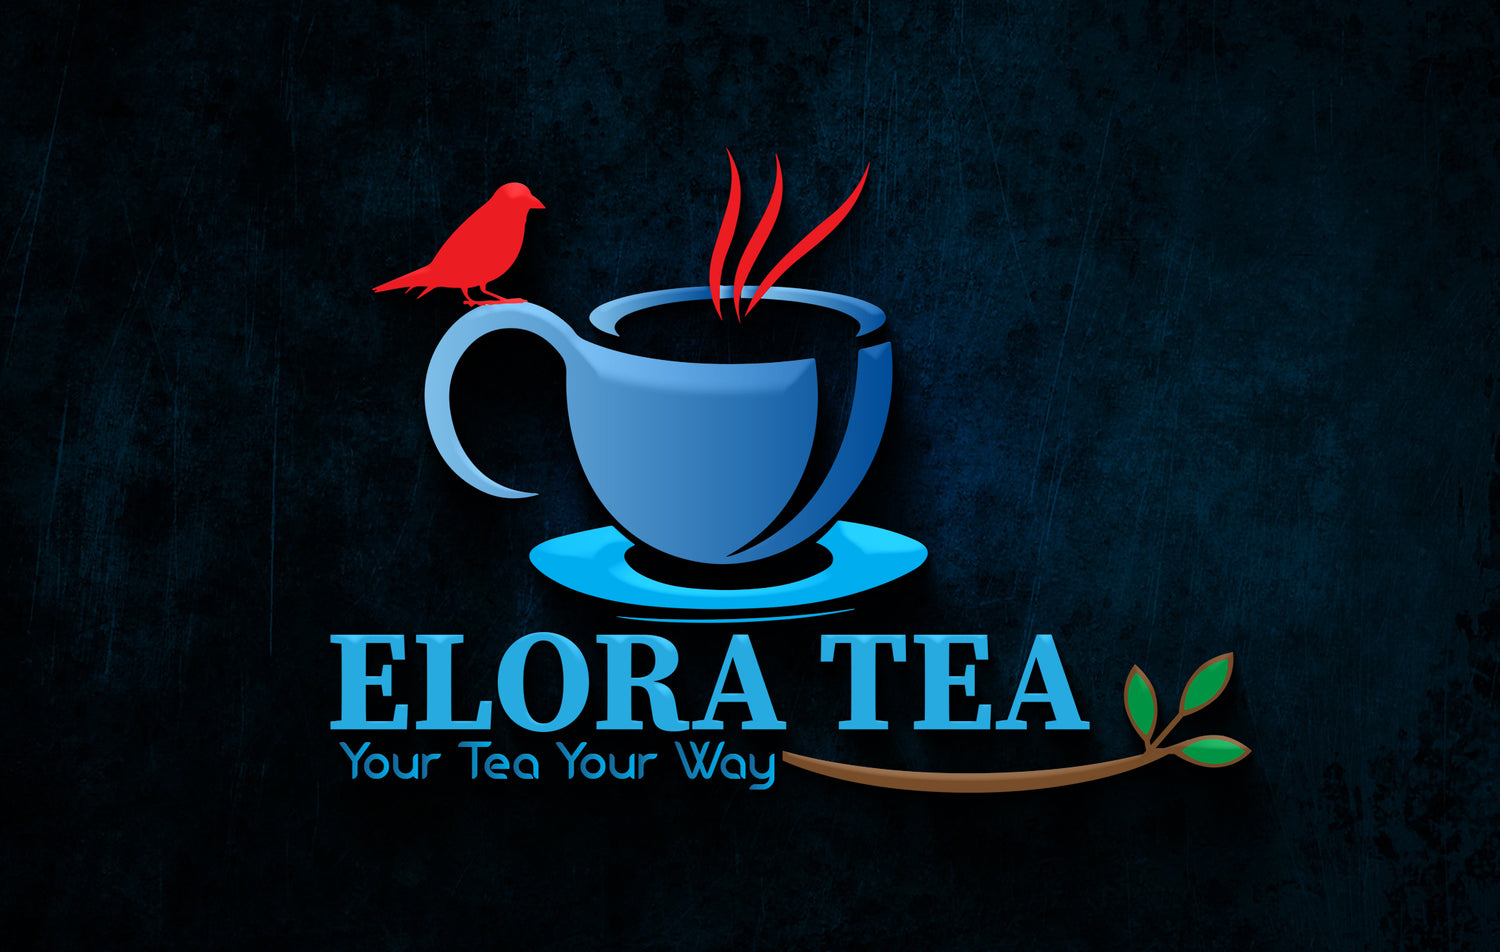 Elora Tea Your Tea Your Way